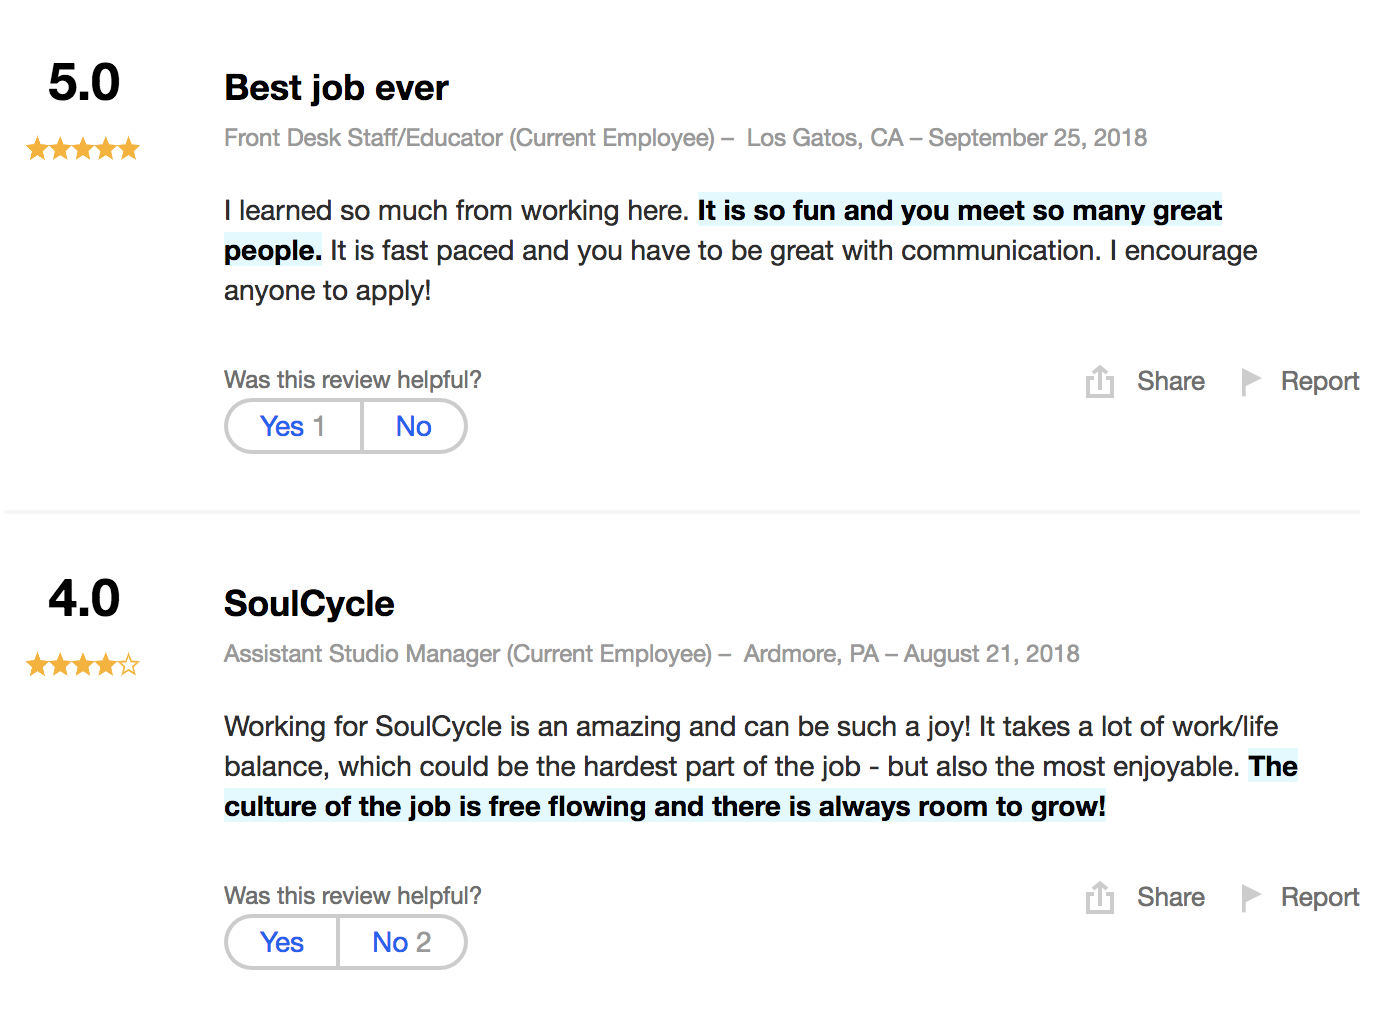 SoulCycle attester som viser glade ansatte som liker merkevaren